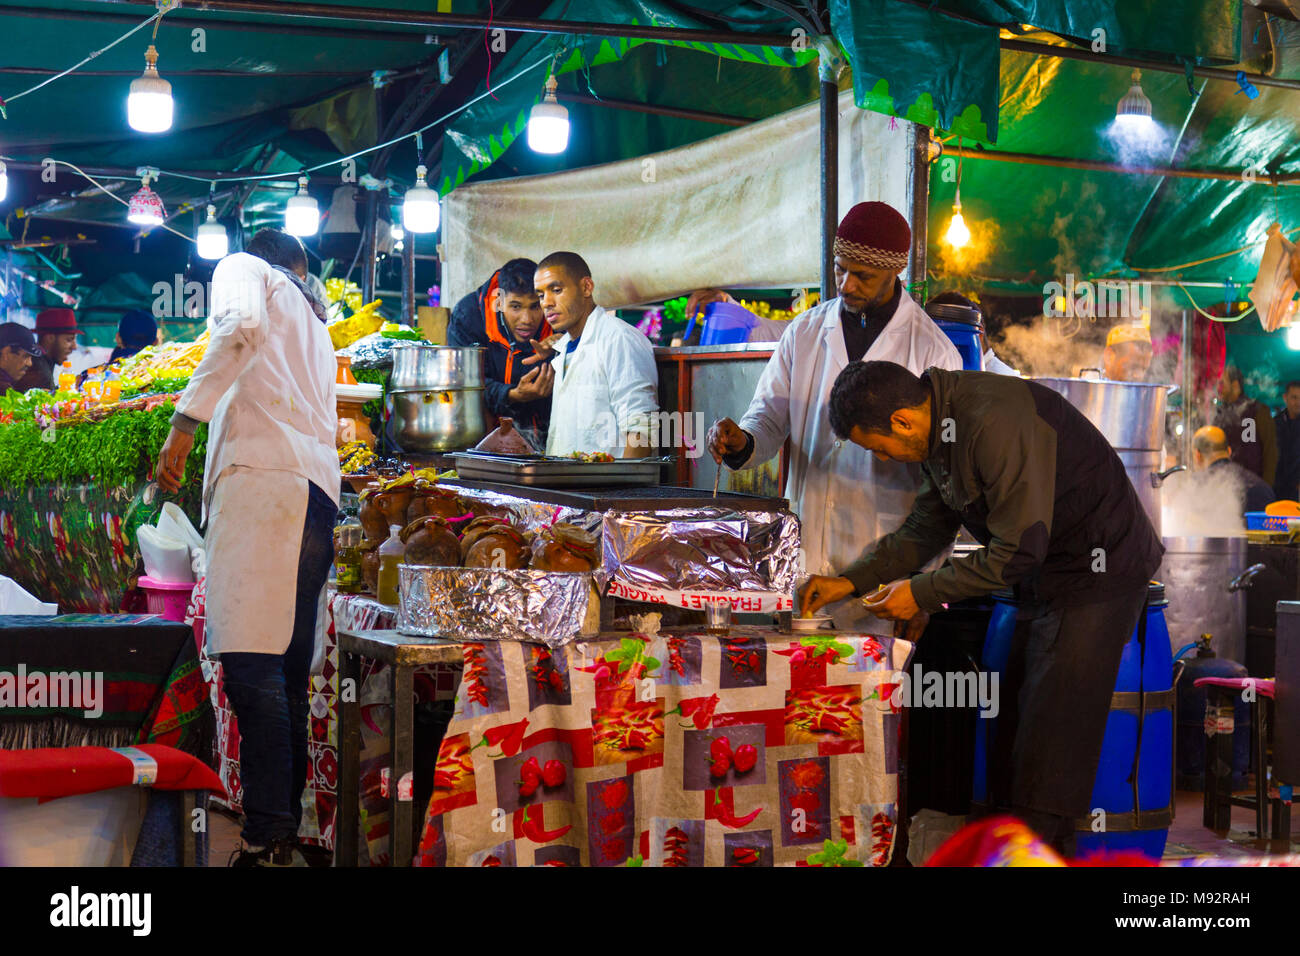 Los chefs cocinando en un puesto de comida en la plaza Djemaa el-Fna, el mercado de la Medina de Marrakech, Marruecos Foto de stock